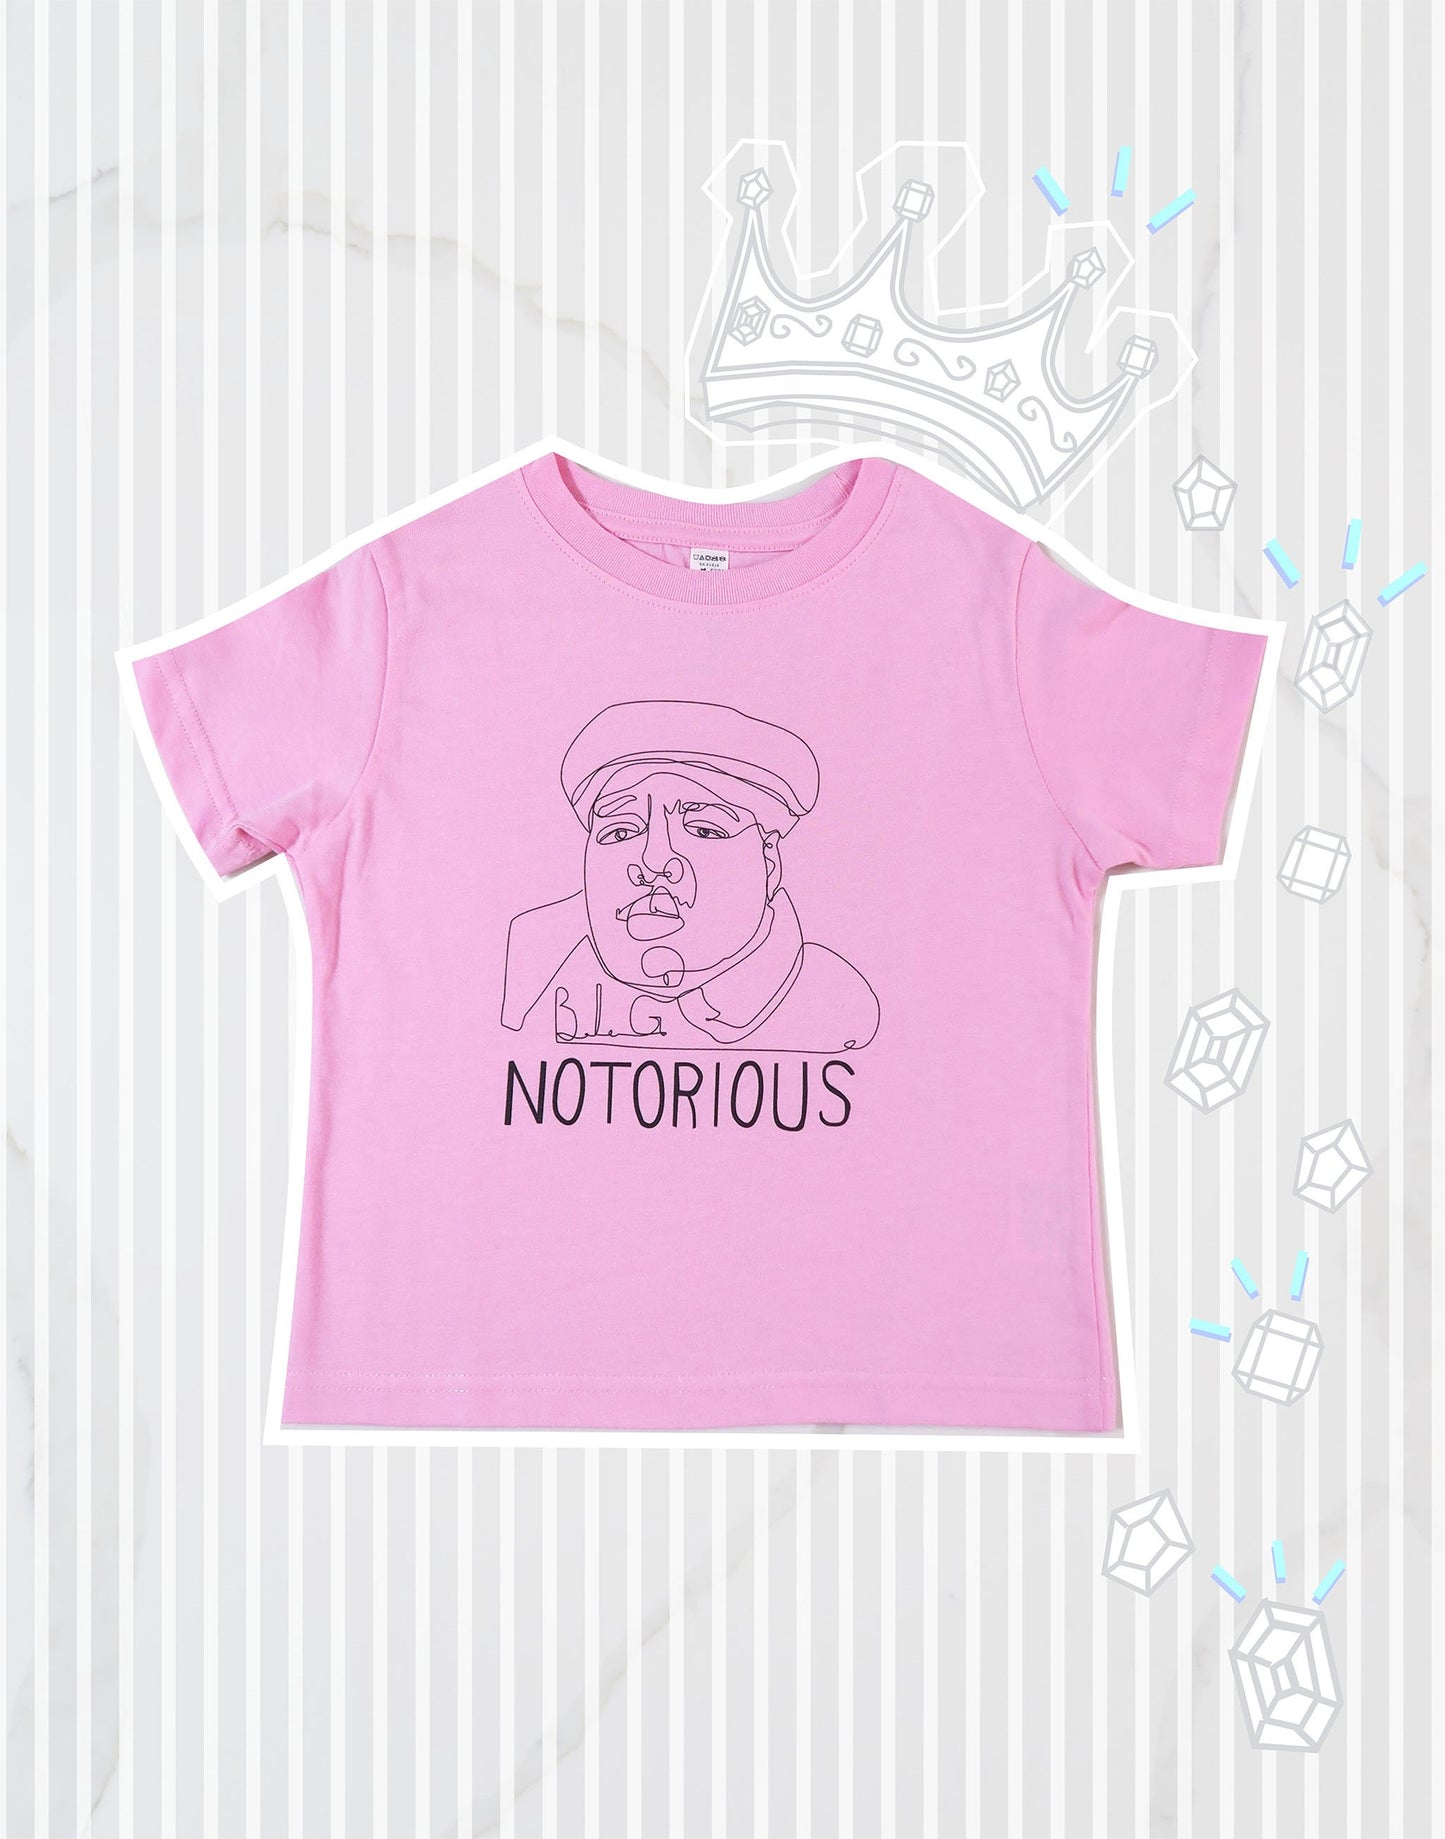 Notorious Short Sleeve Kids T-Shirt